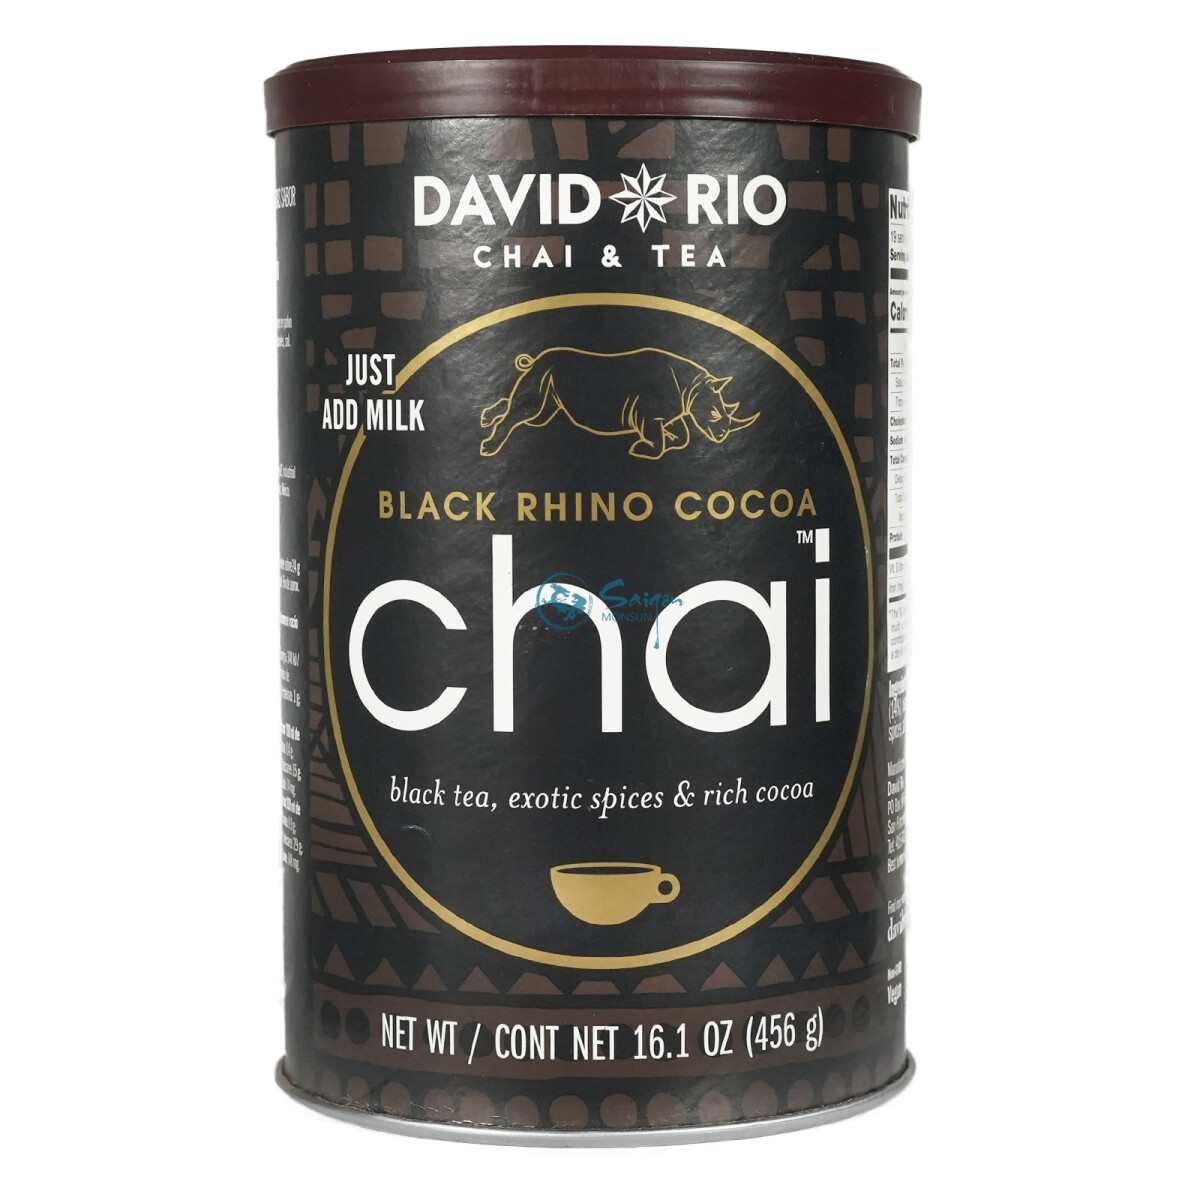 David Rio Black Rhino Cocoa Chai Tea 456g